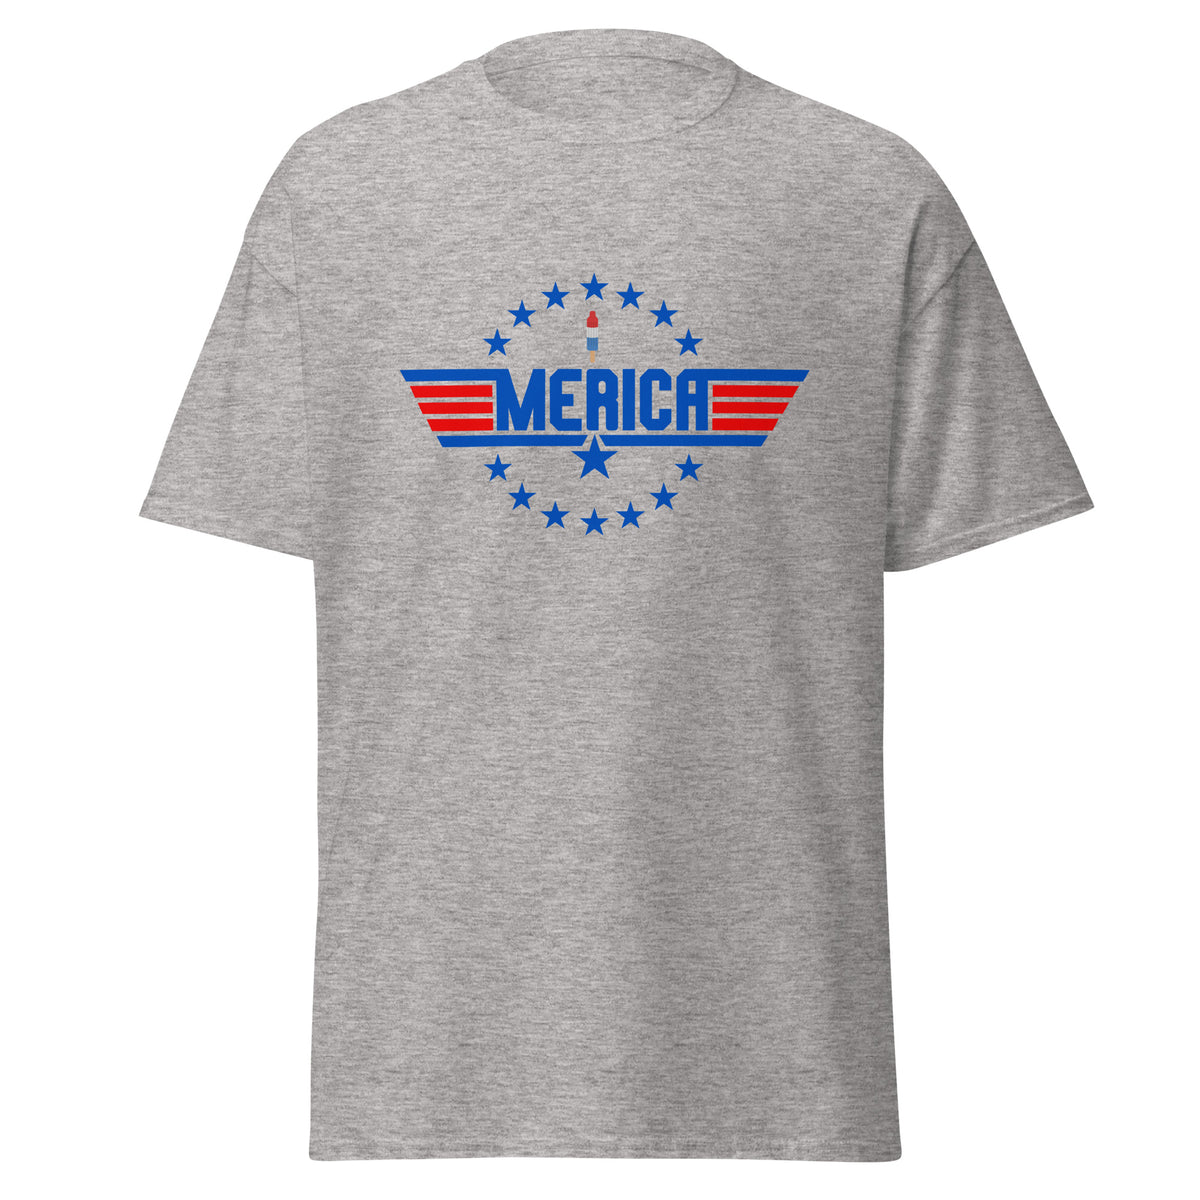 Merica Top Gun T-Shirt